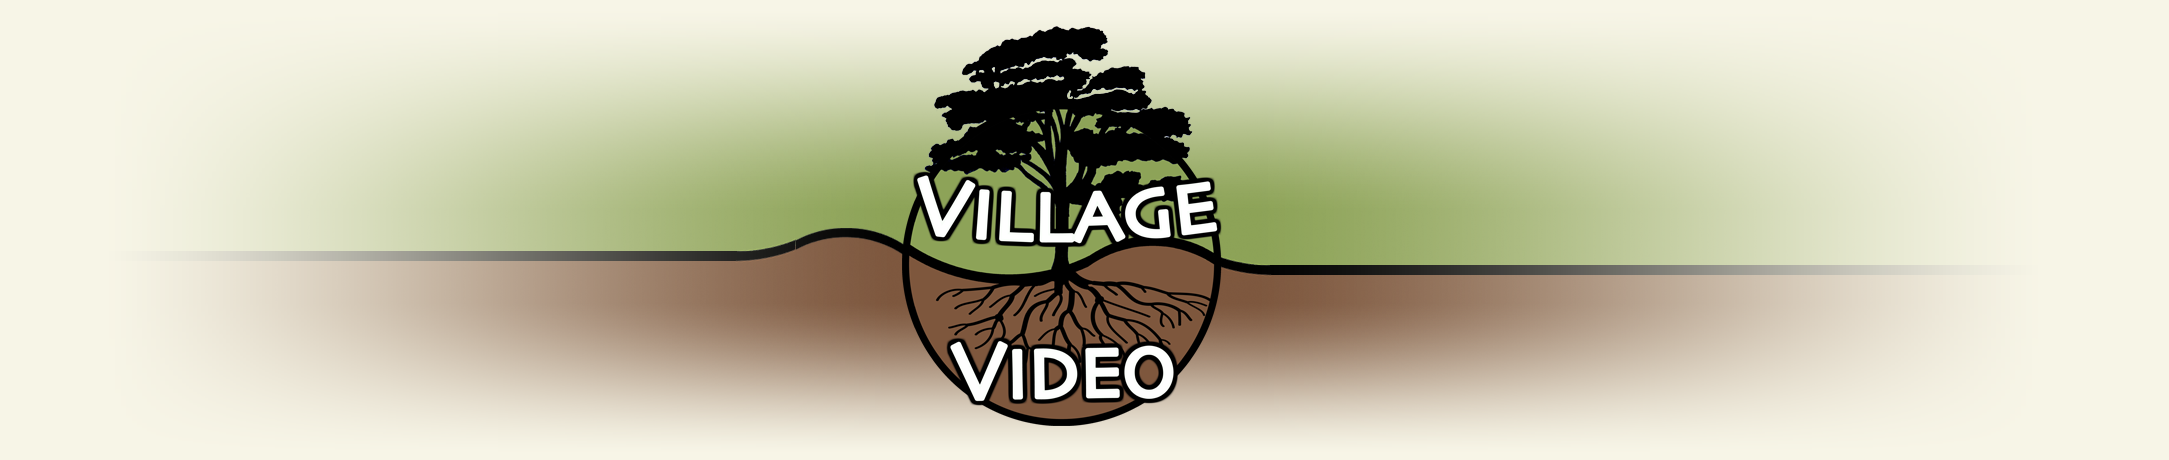 Village Video